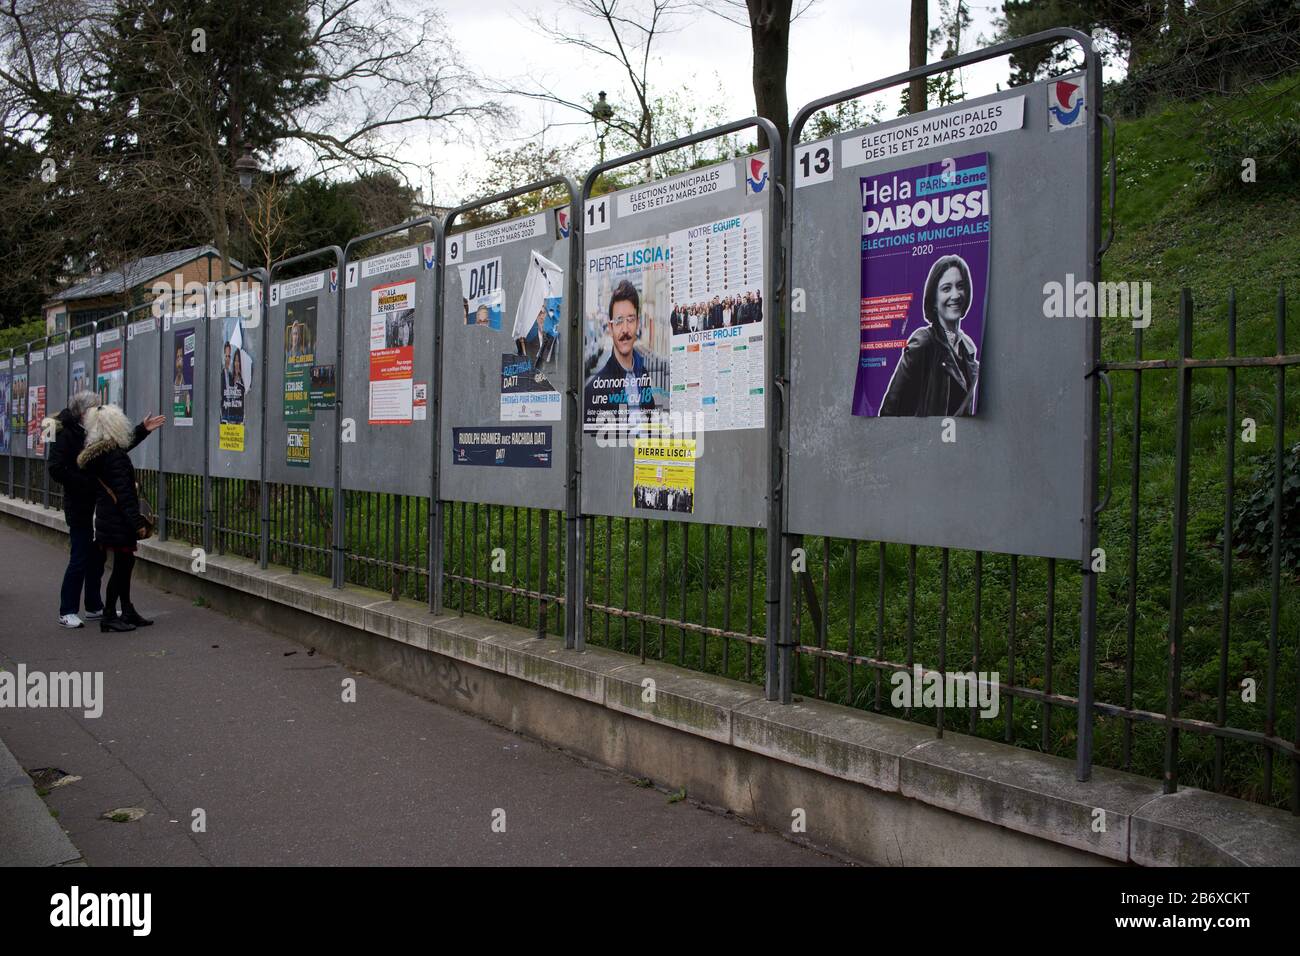 Paris se prépare aux élections locales françaises au milieu des craintes de coronavirus, rue Ronsard, 75018 Paris, France - Mars 2020 Banque D'Images